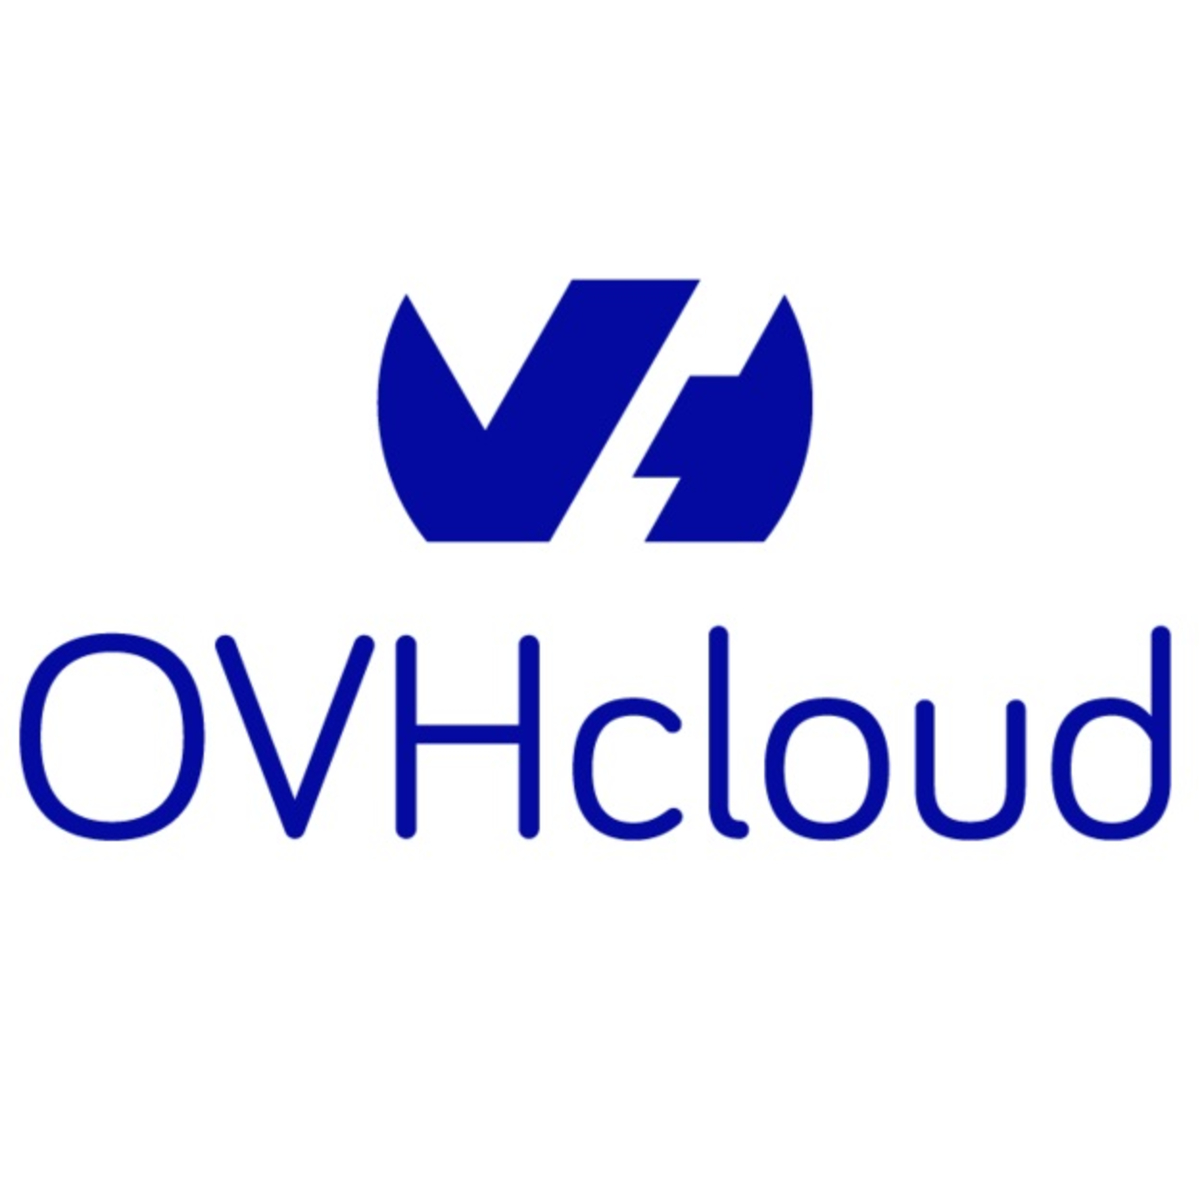 OVHcloud obtient la qualification SecNumCloud de l'ANSSI, attestant de son haut niveau de sécurité